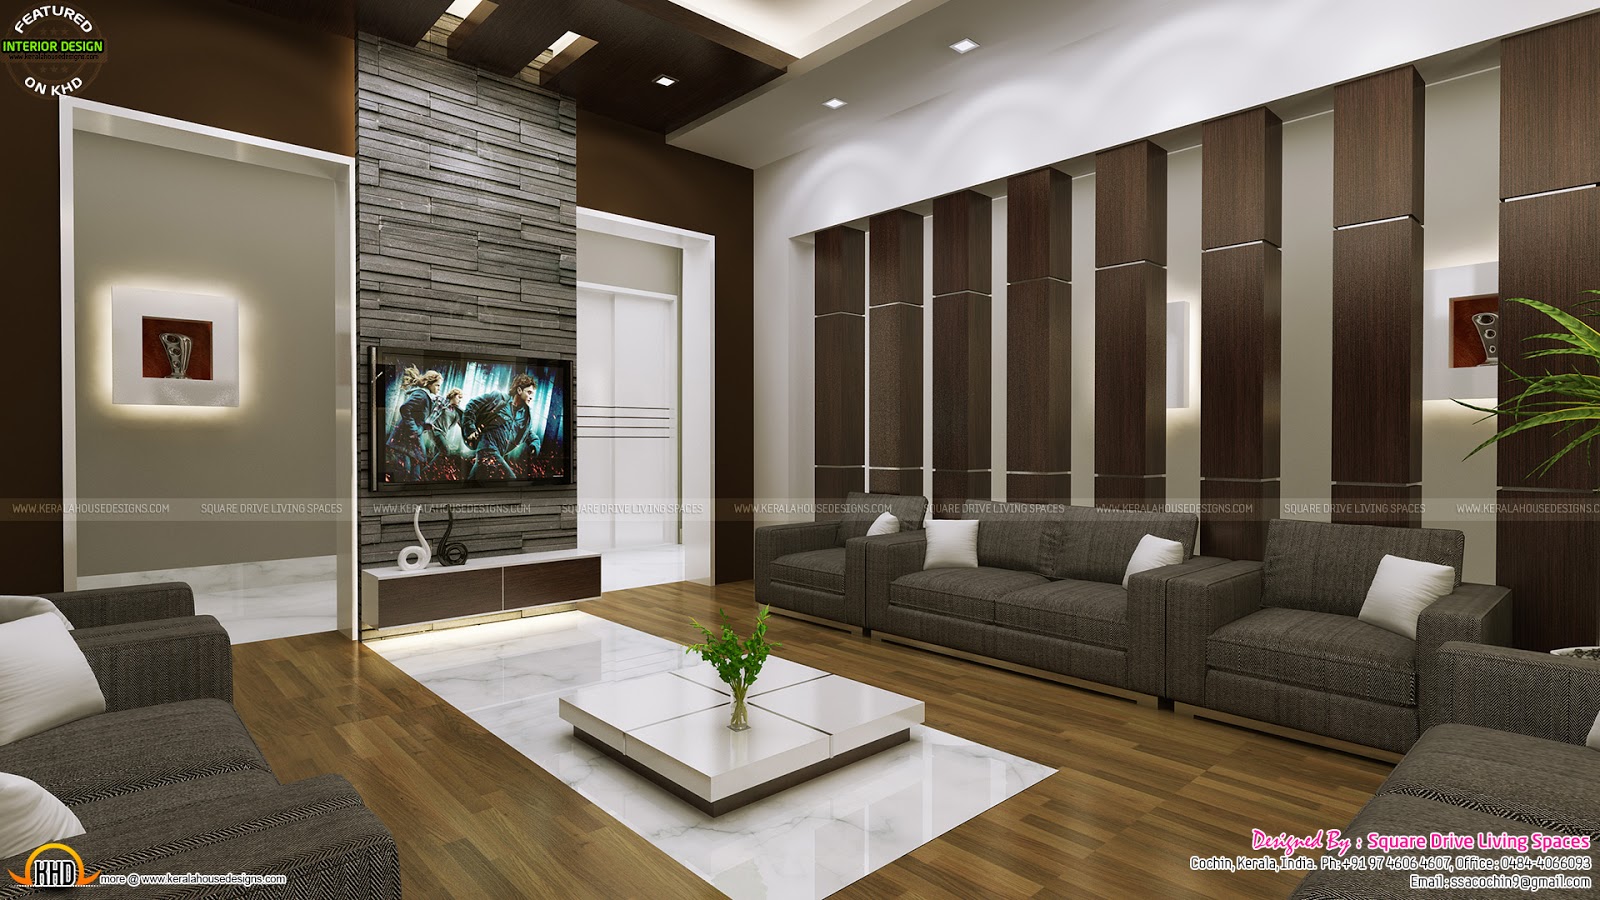 Attractive home interior ideas - Kerala home design and ...